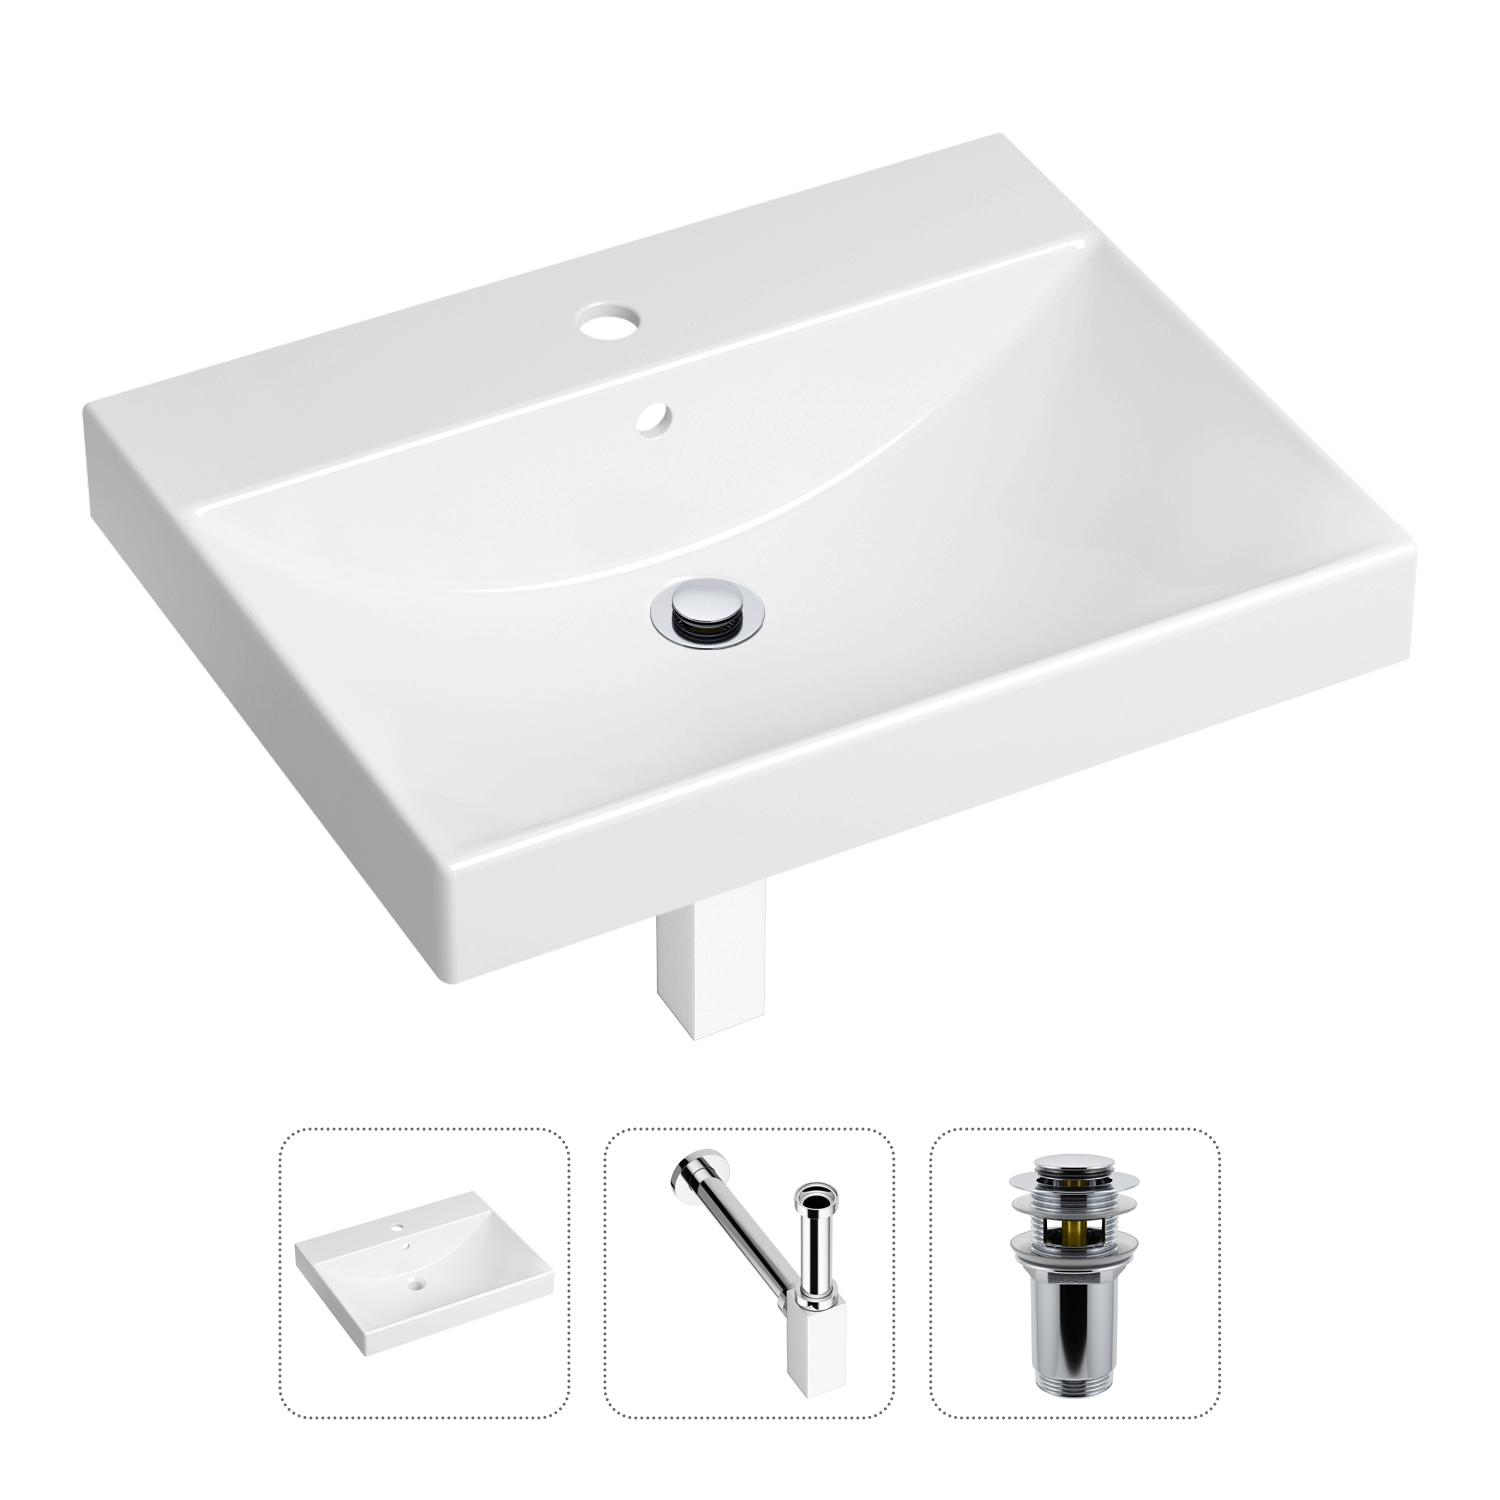 Комплект 3 в 1 Lavinia Boho Bathroom Sink 21520556: раковина 60 см, сифон, донный клапан набор чашек кофейных роза ложки из серебра 4 предмета